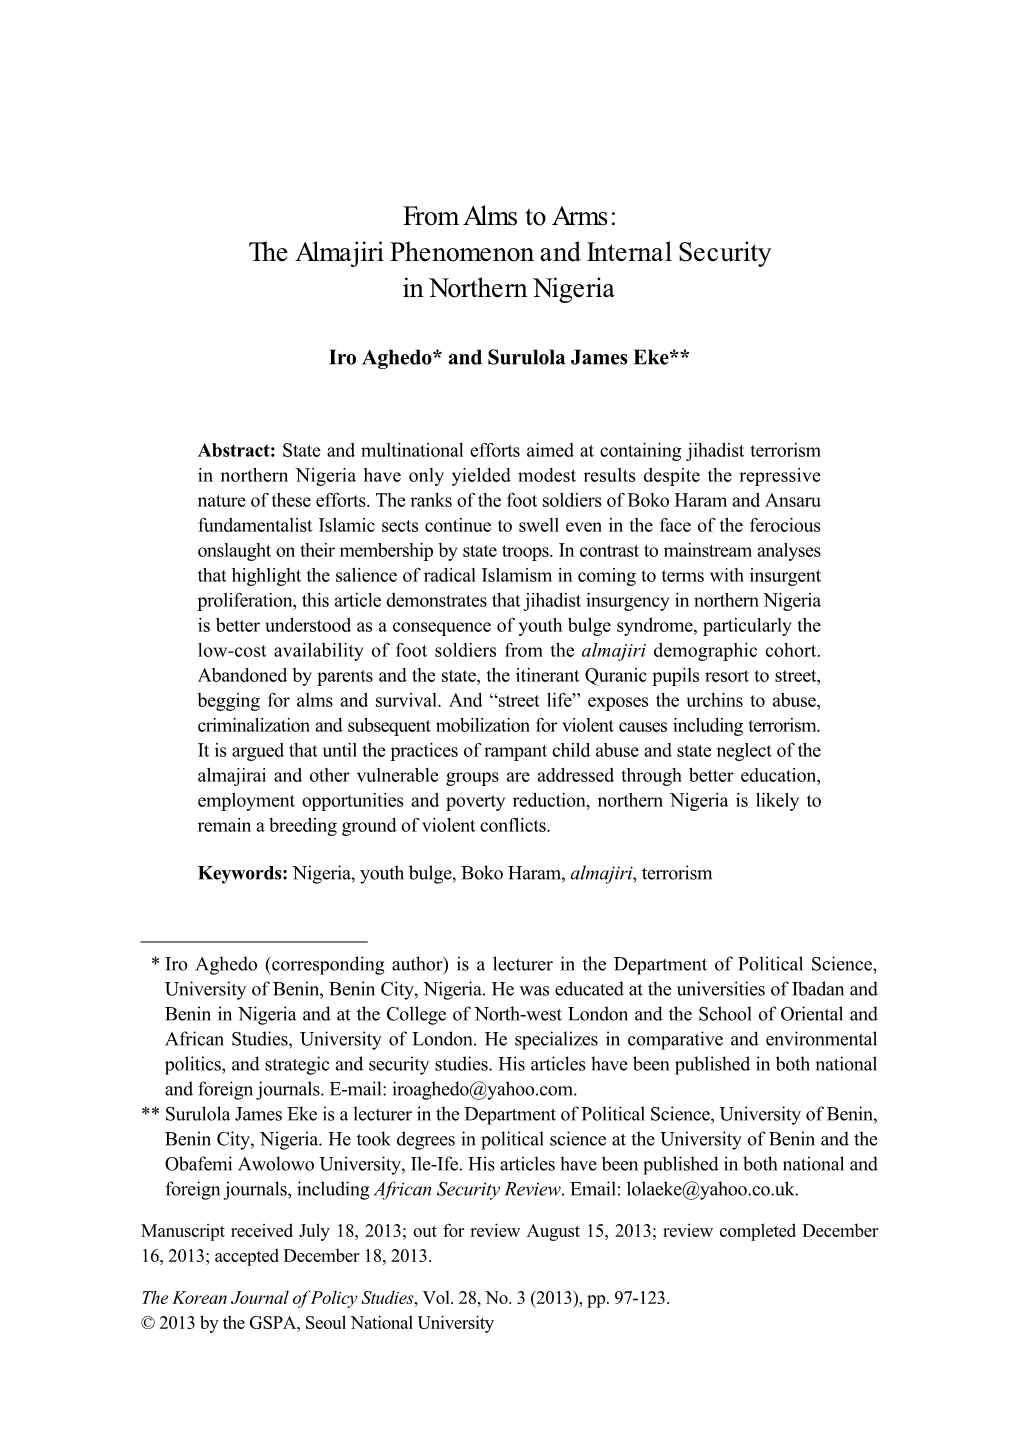 The Almajiri Phenomenon and Internal Security in Northern Nigeria